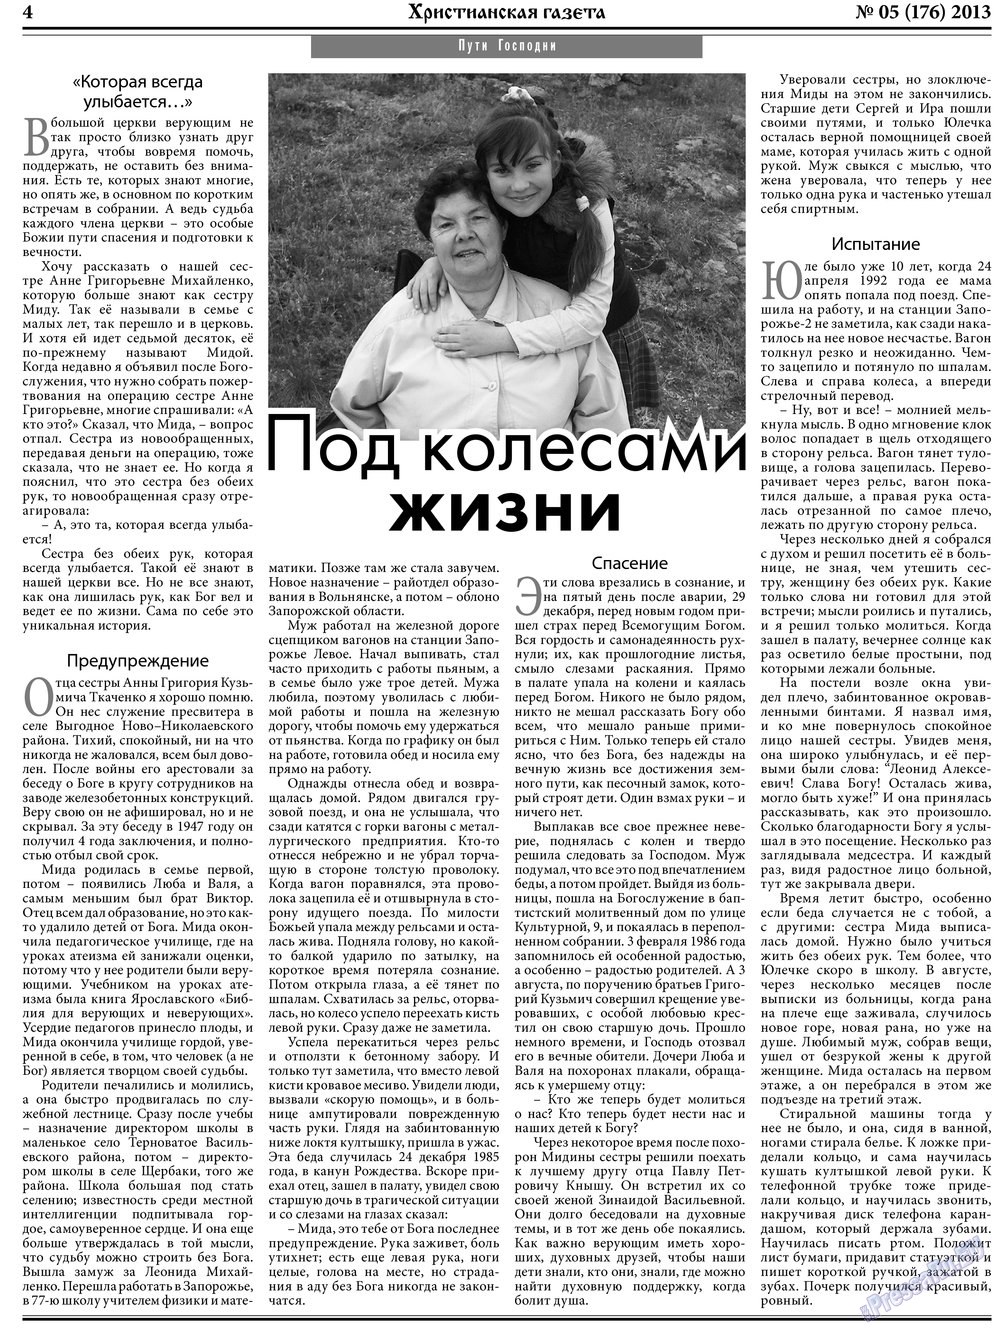 Христианская газета, газета. 2013 №5 стр.4